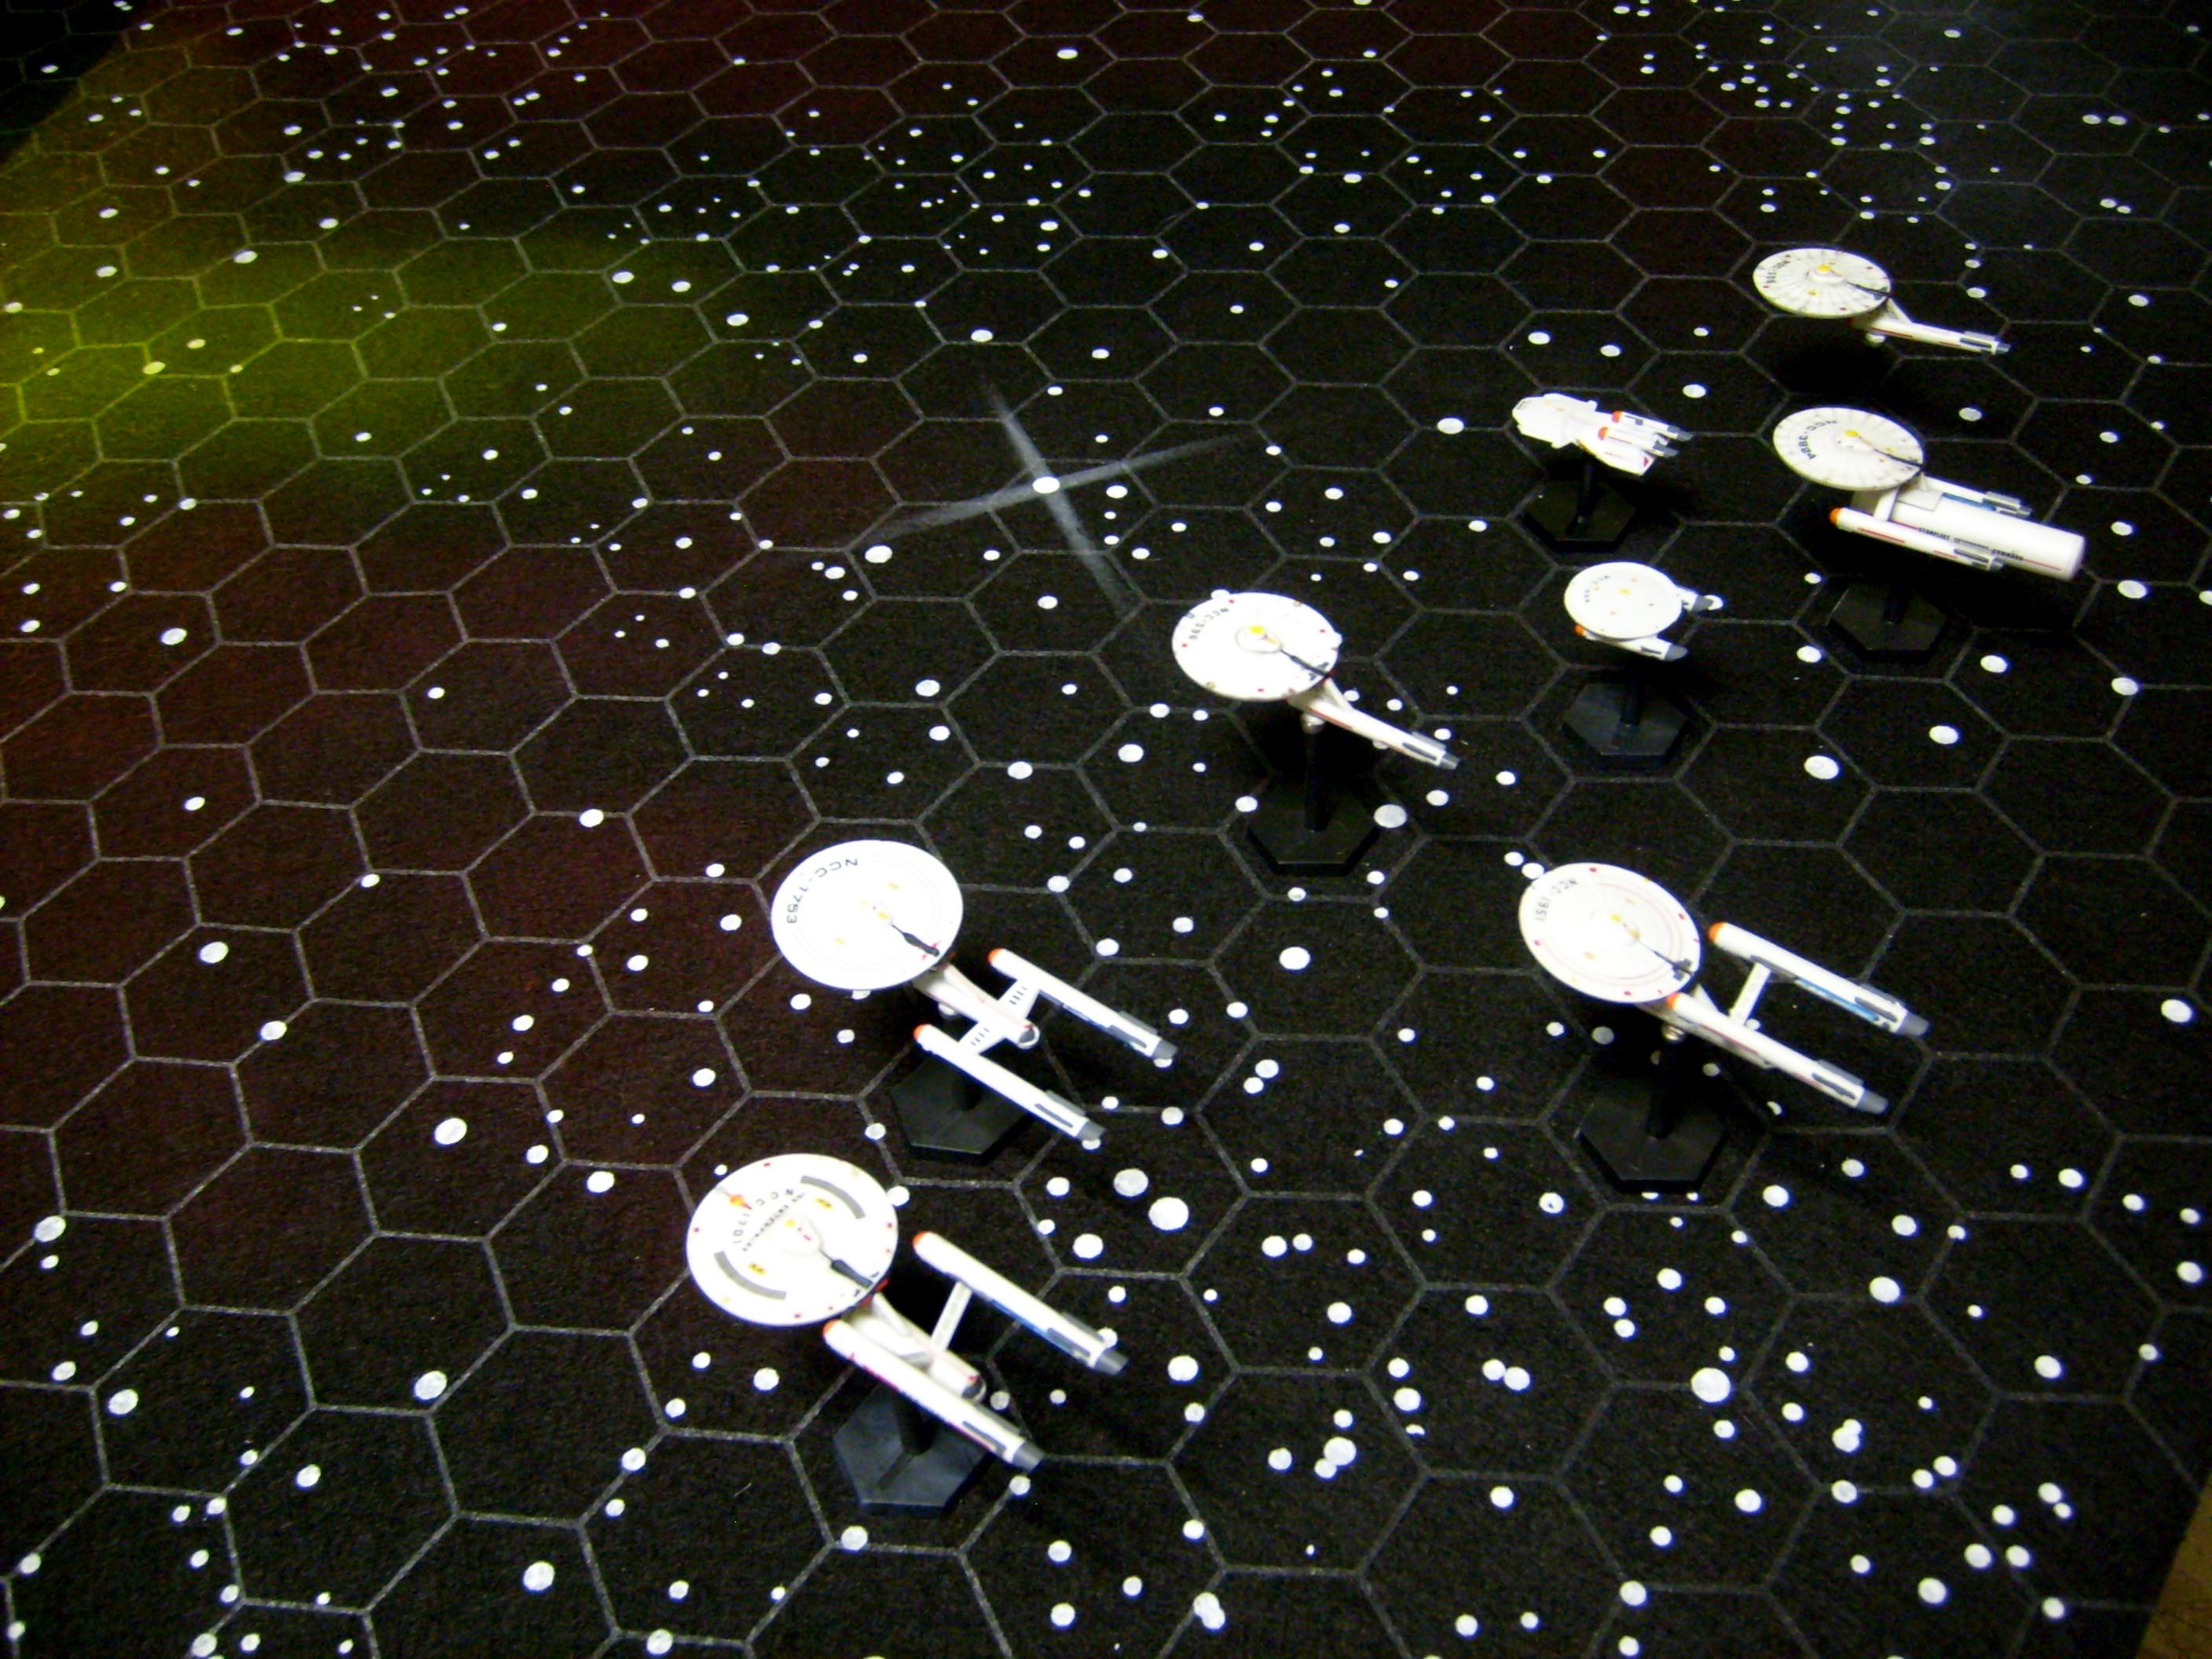 Federation Commander, Star Fleet Battles, Star Trek